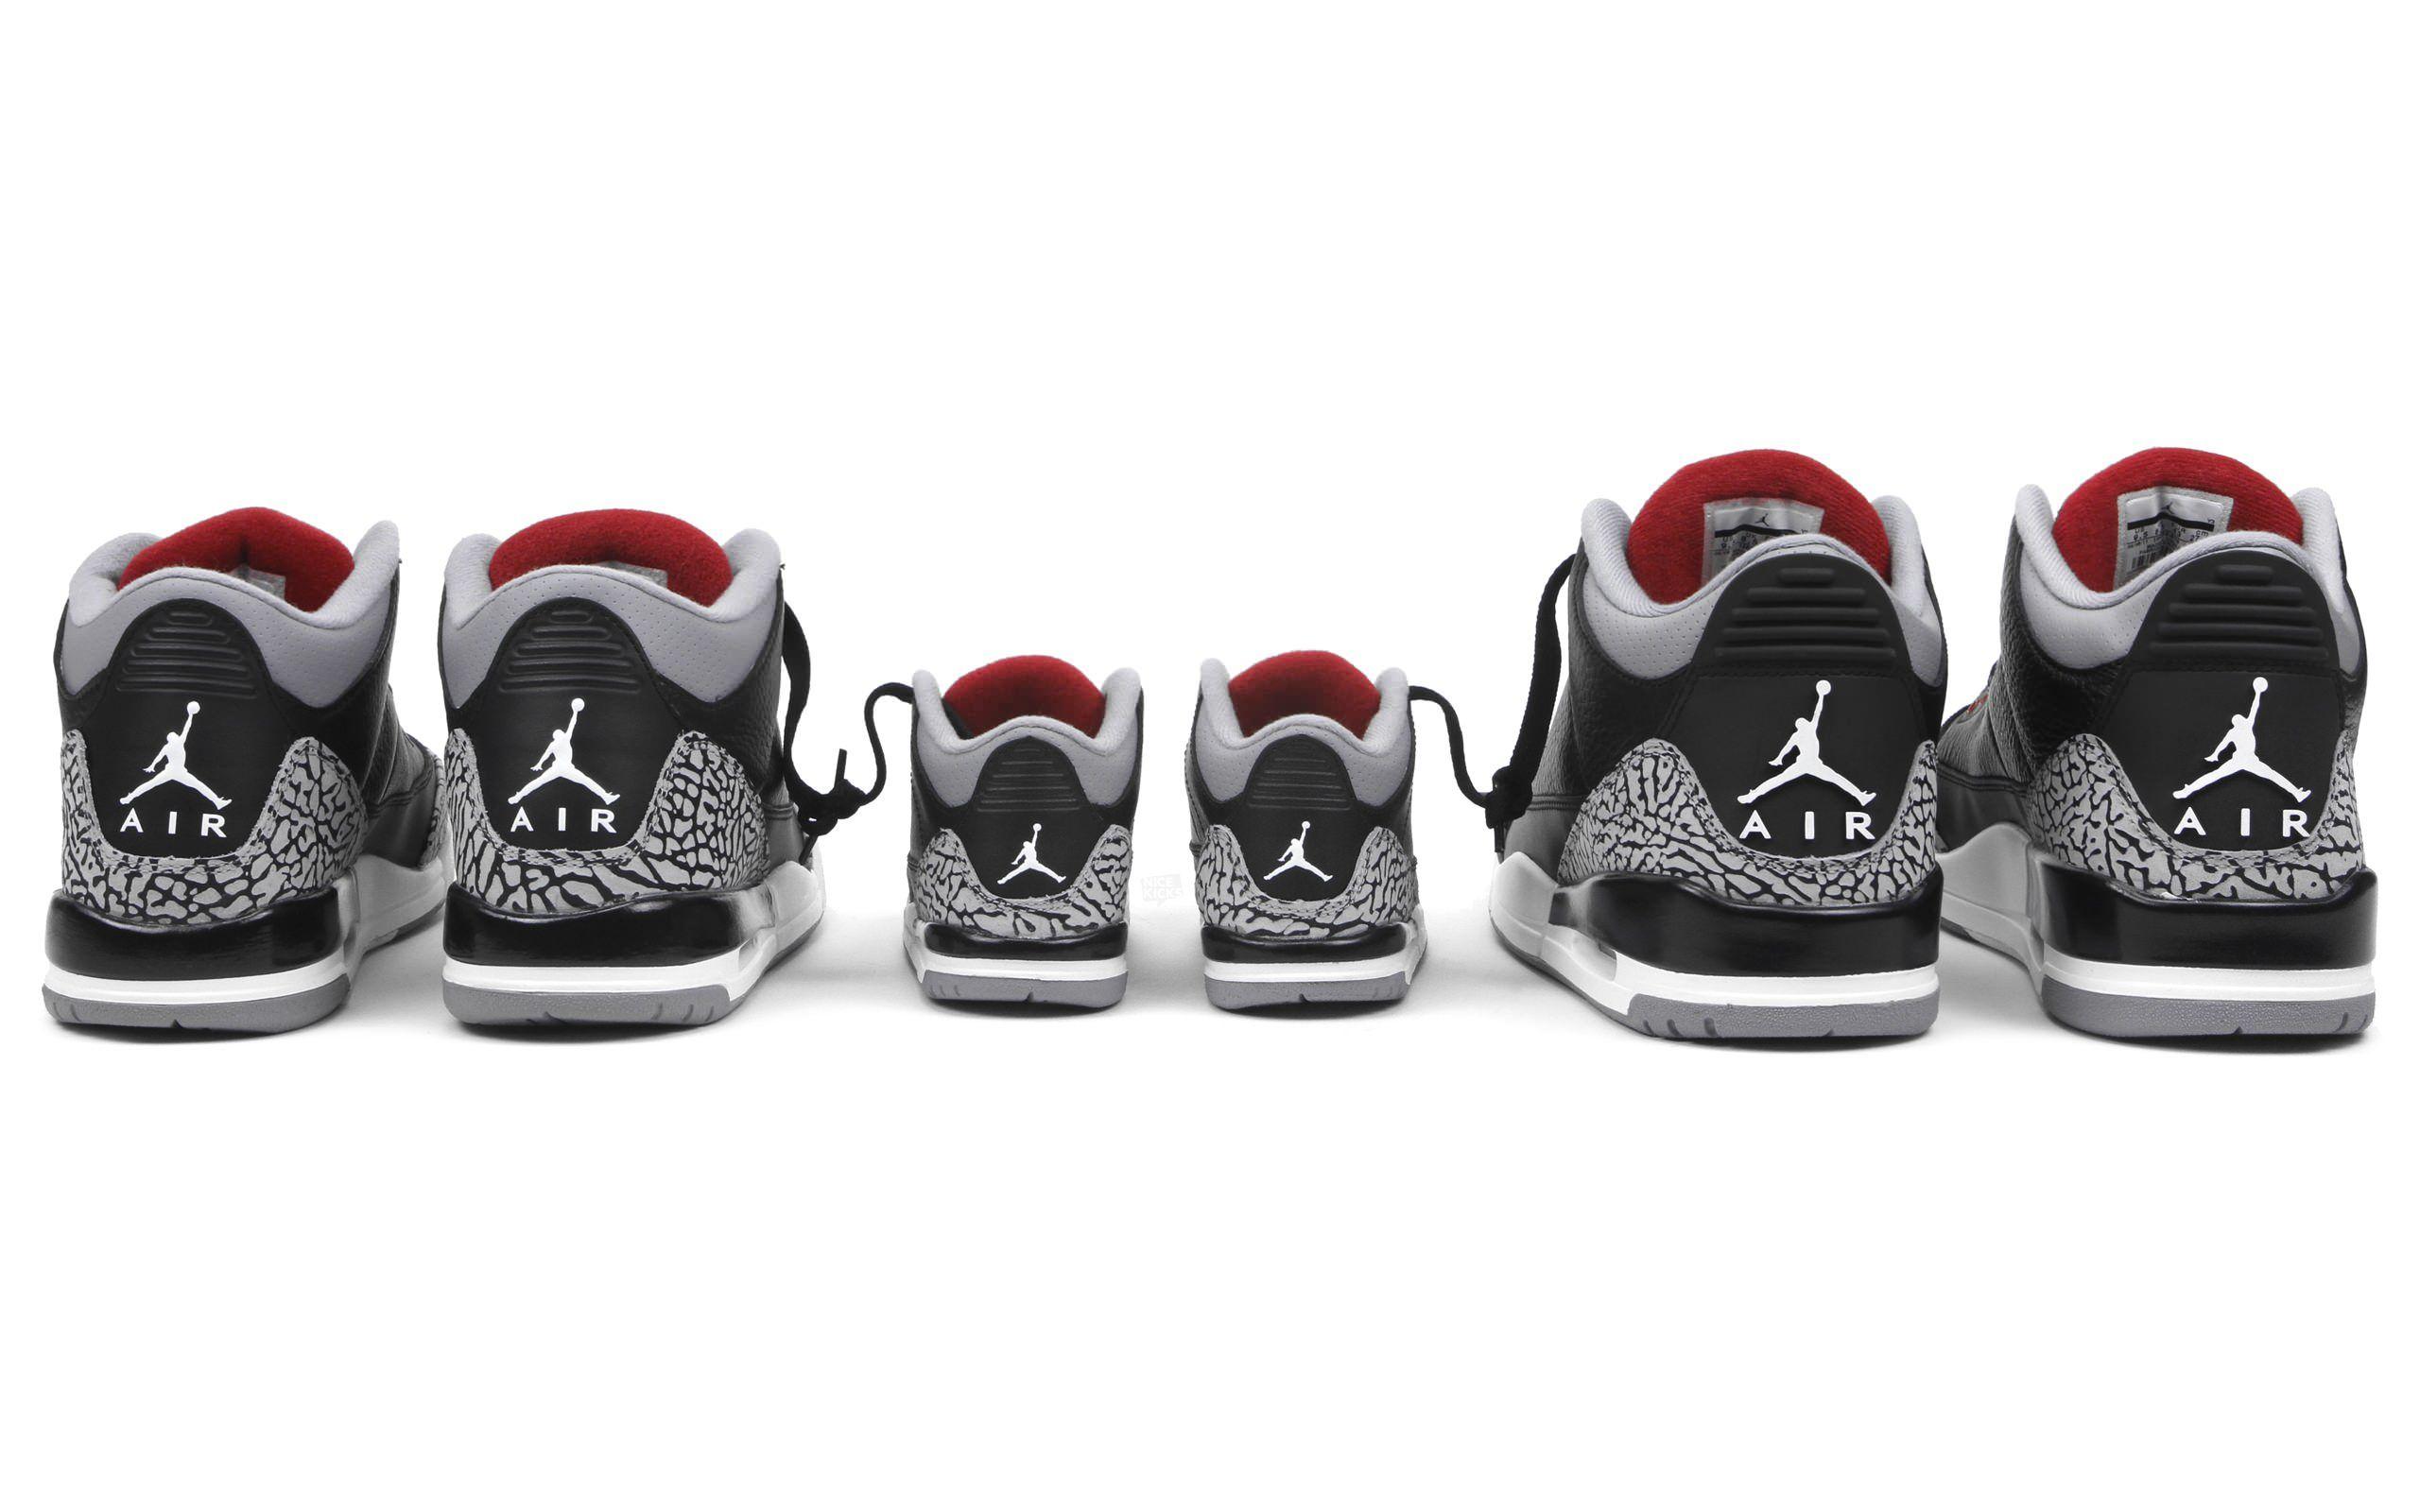 Nike Air Jordan Wallpapers